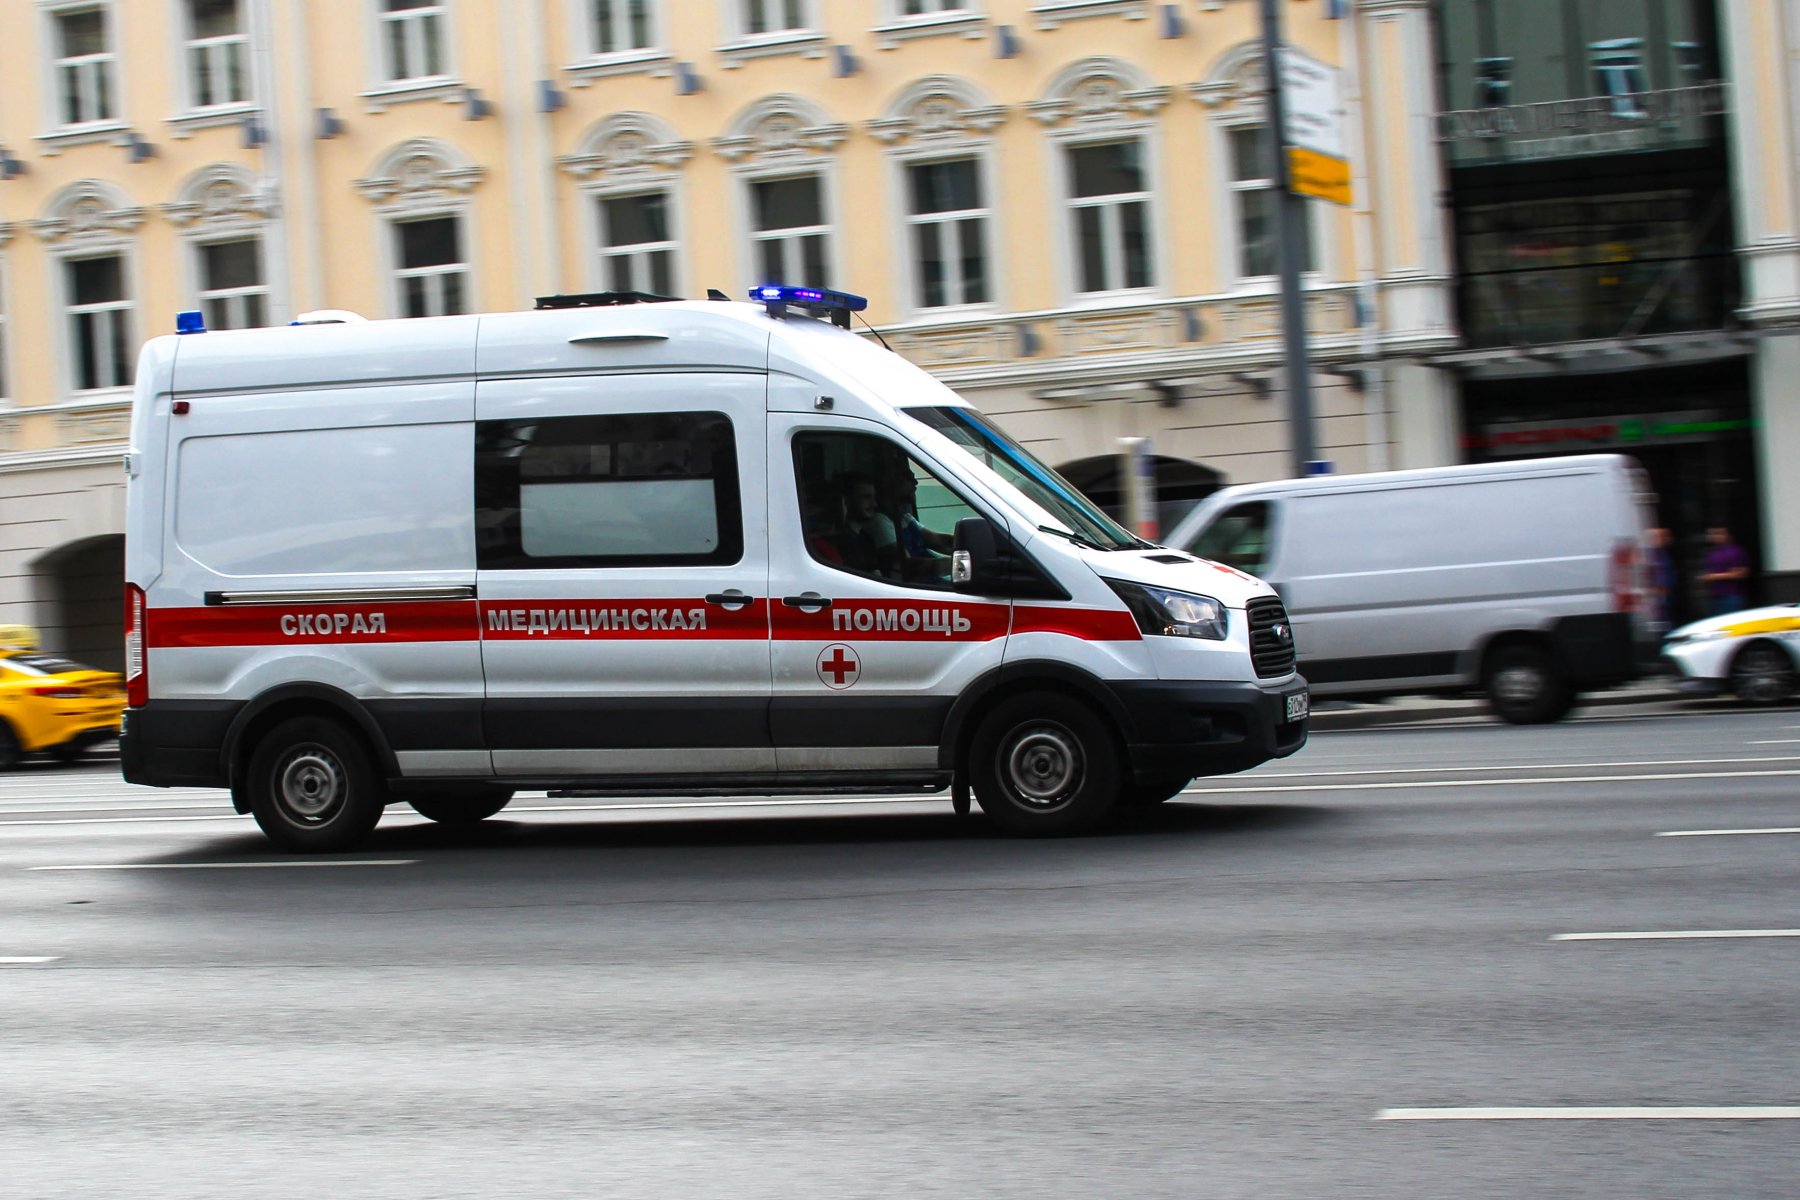 В Московской области назвали лучшую подстанцию скорой помощи